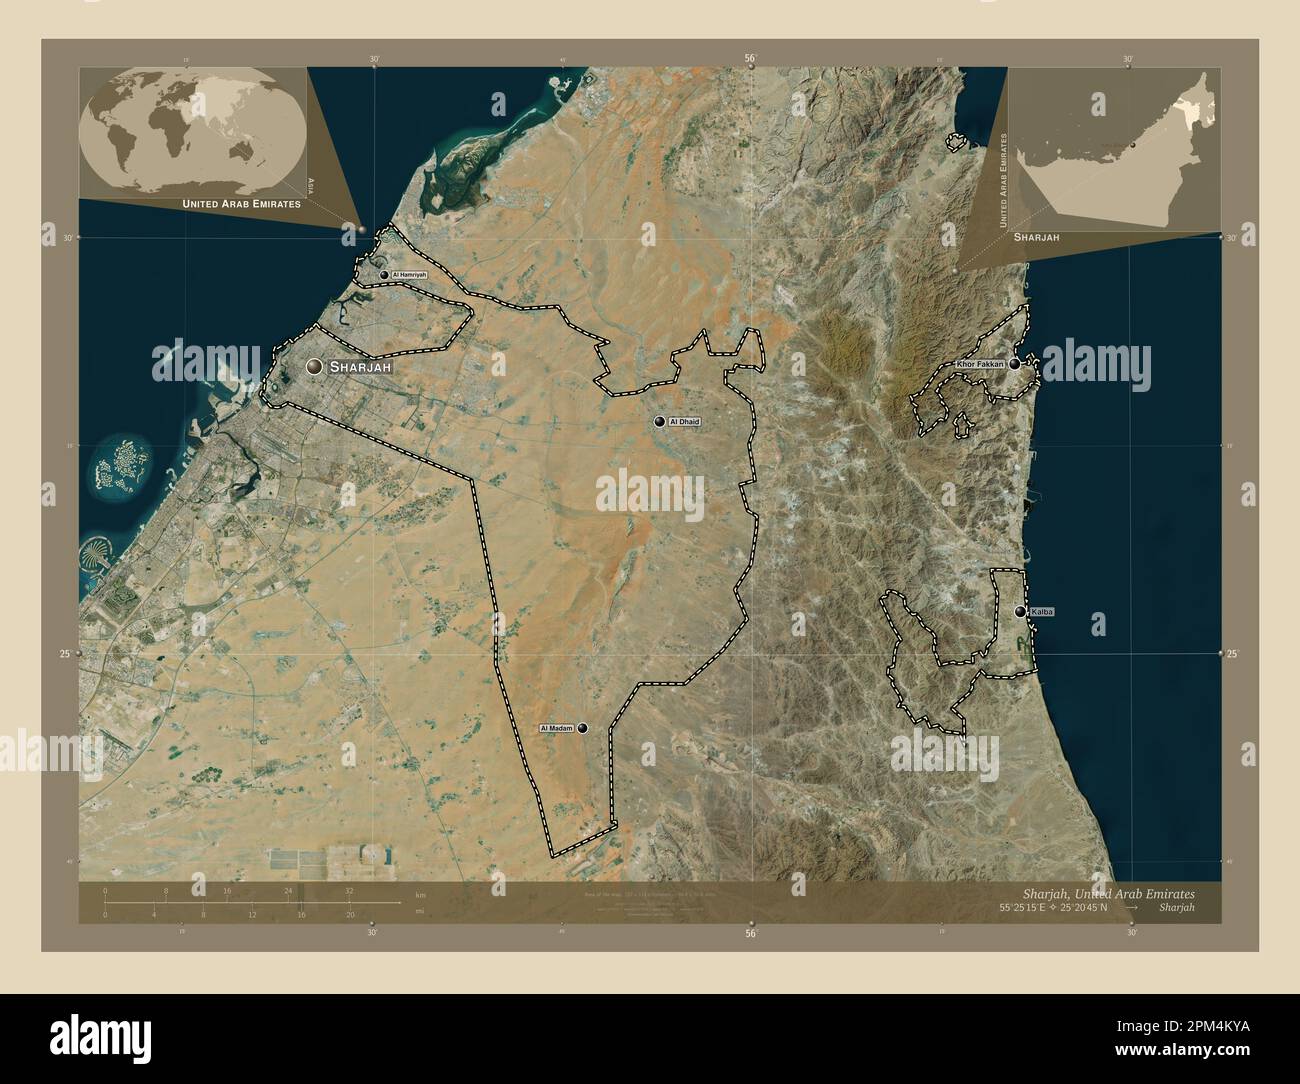 Sharjah, emirato degli Emirati Arabi Uniti. Mappa satellitare ad alta risoluzione. Località e nomi delle principali città della regione. Posizione ausiliaria ad angolo Foto Stock